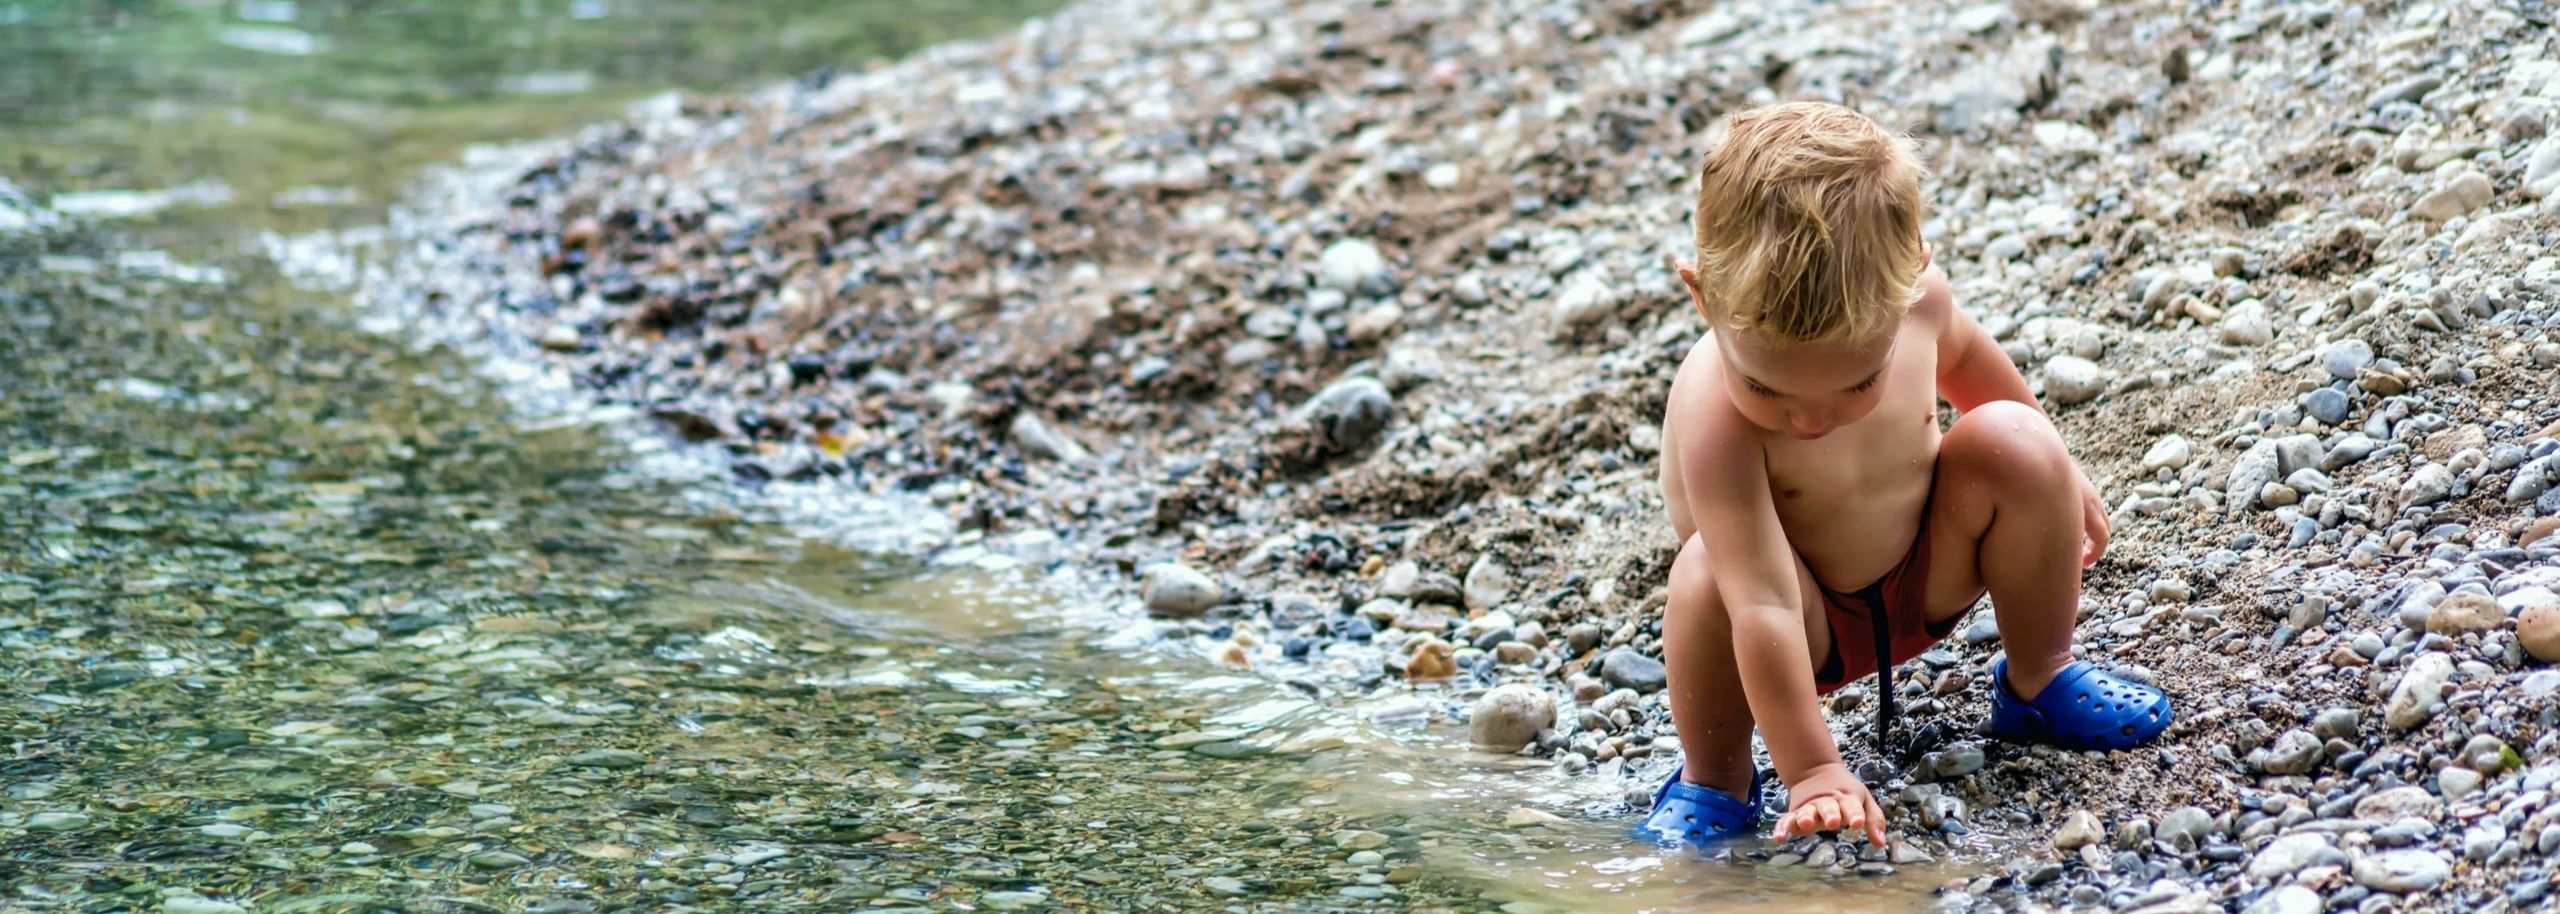 Enfant au bord de la rivière